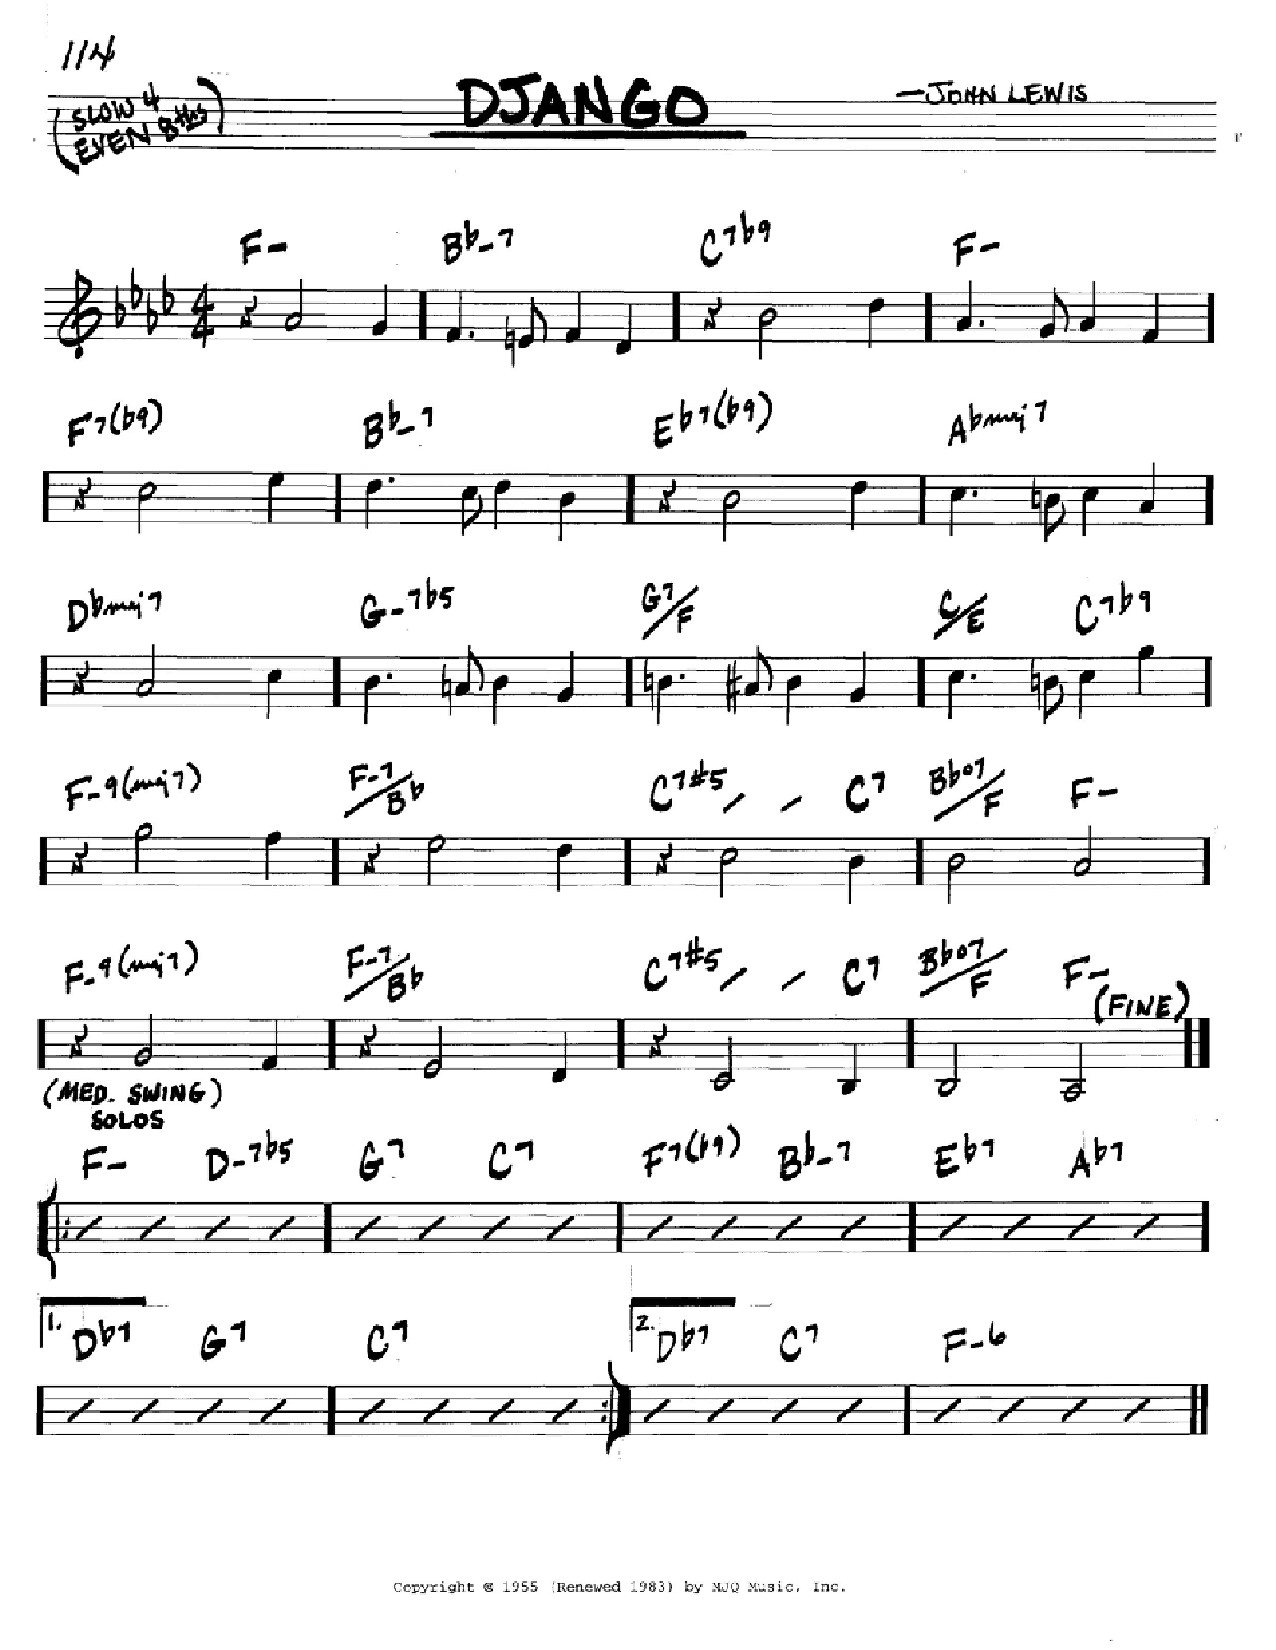 John Lewis Django Sheet Music Notes & Chords for Melody Line, Lyrics & Chords - Download or Print PDF